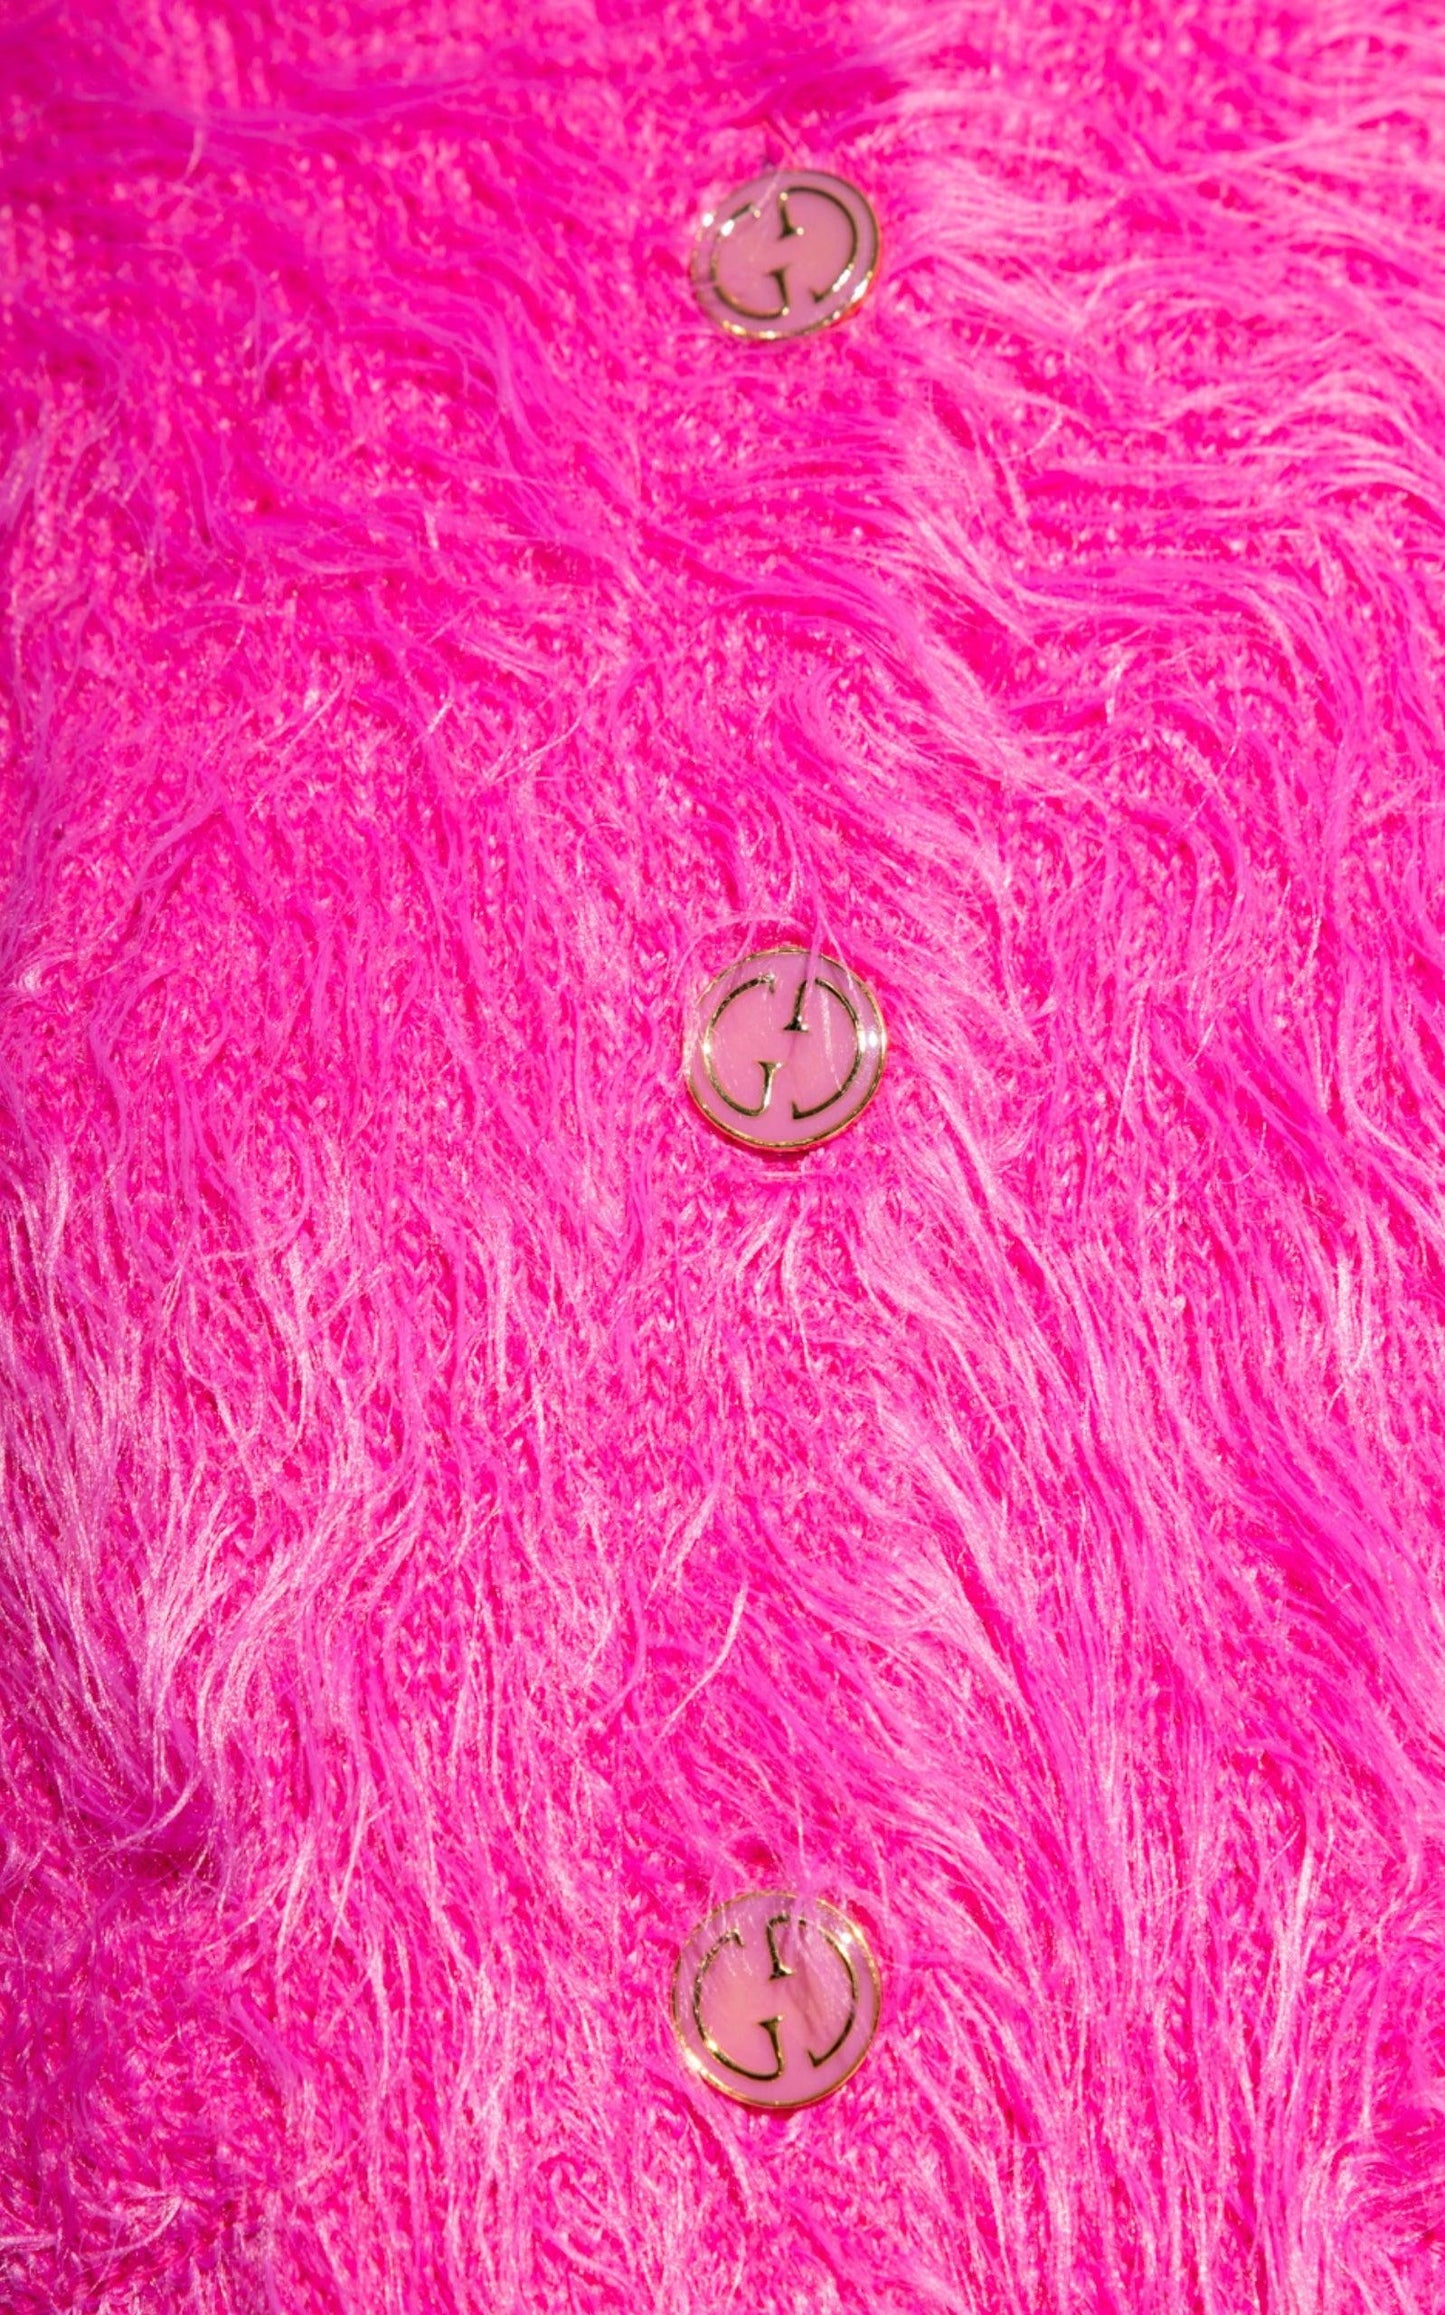 Pink Brushed Wool Cardigan